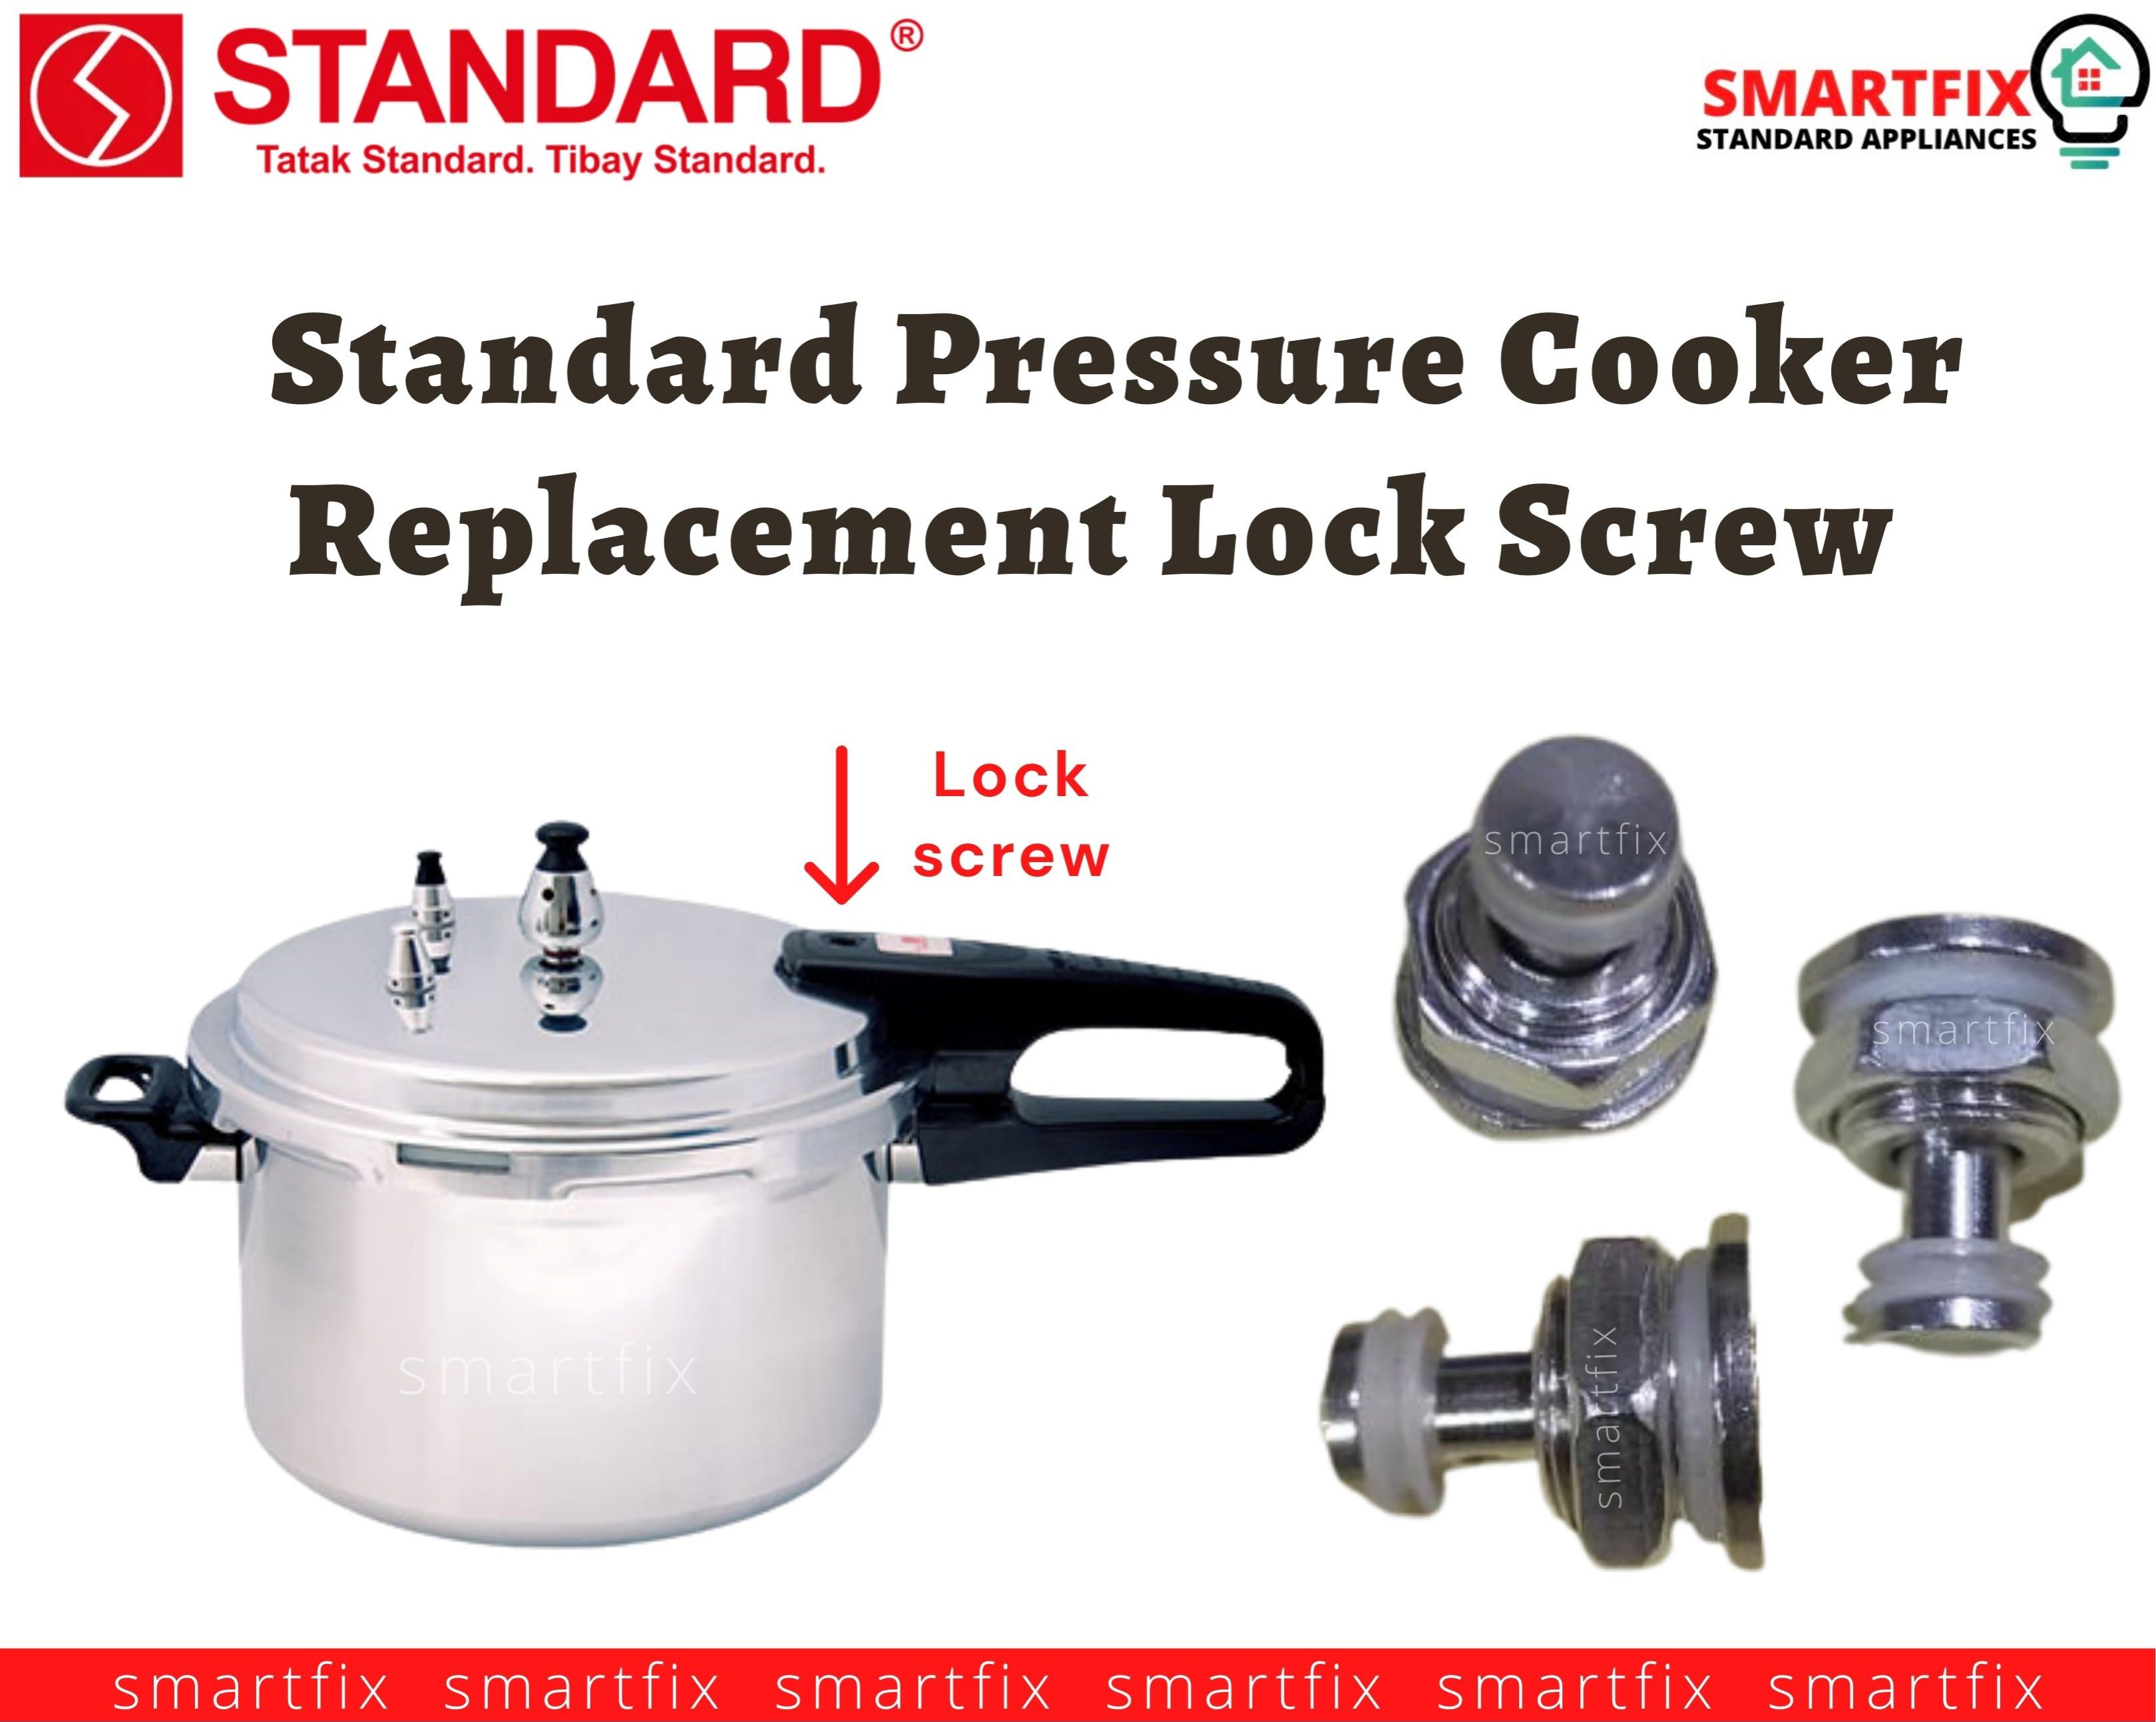 Shop Standard Pressure Cooker Parts online